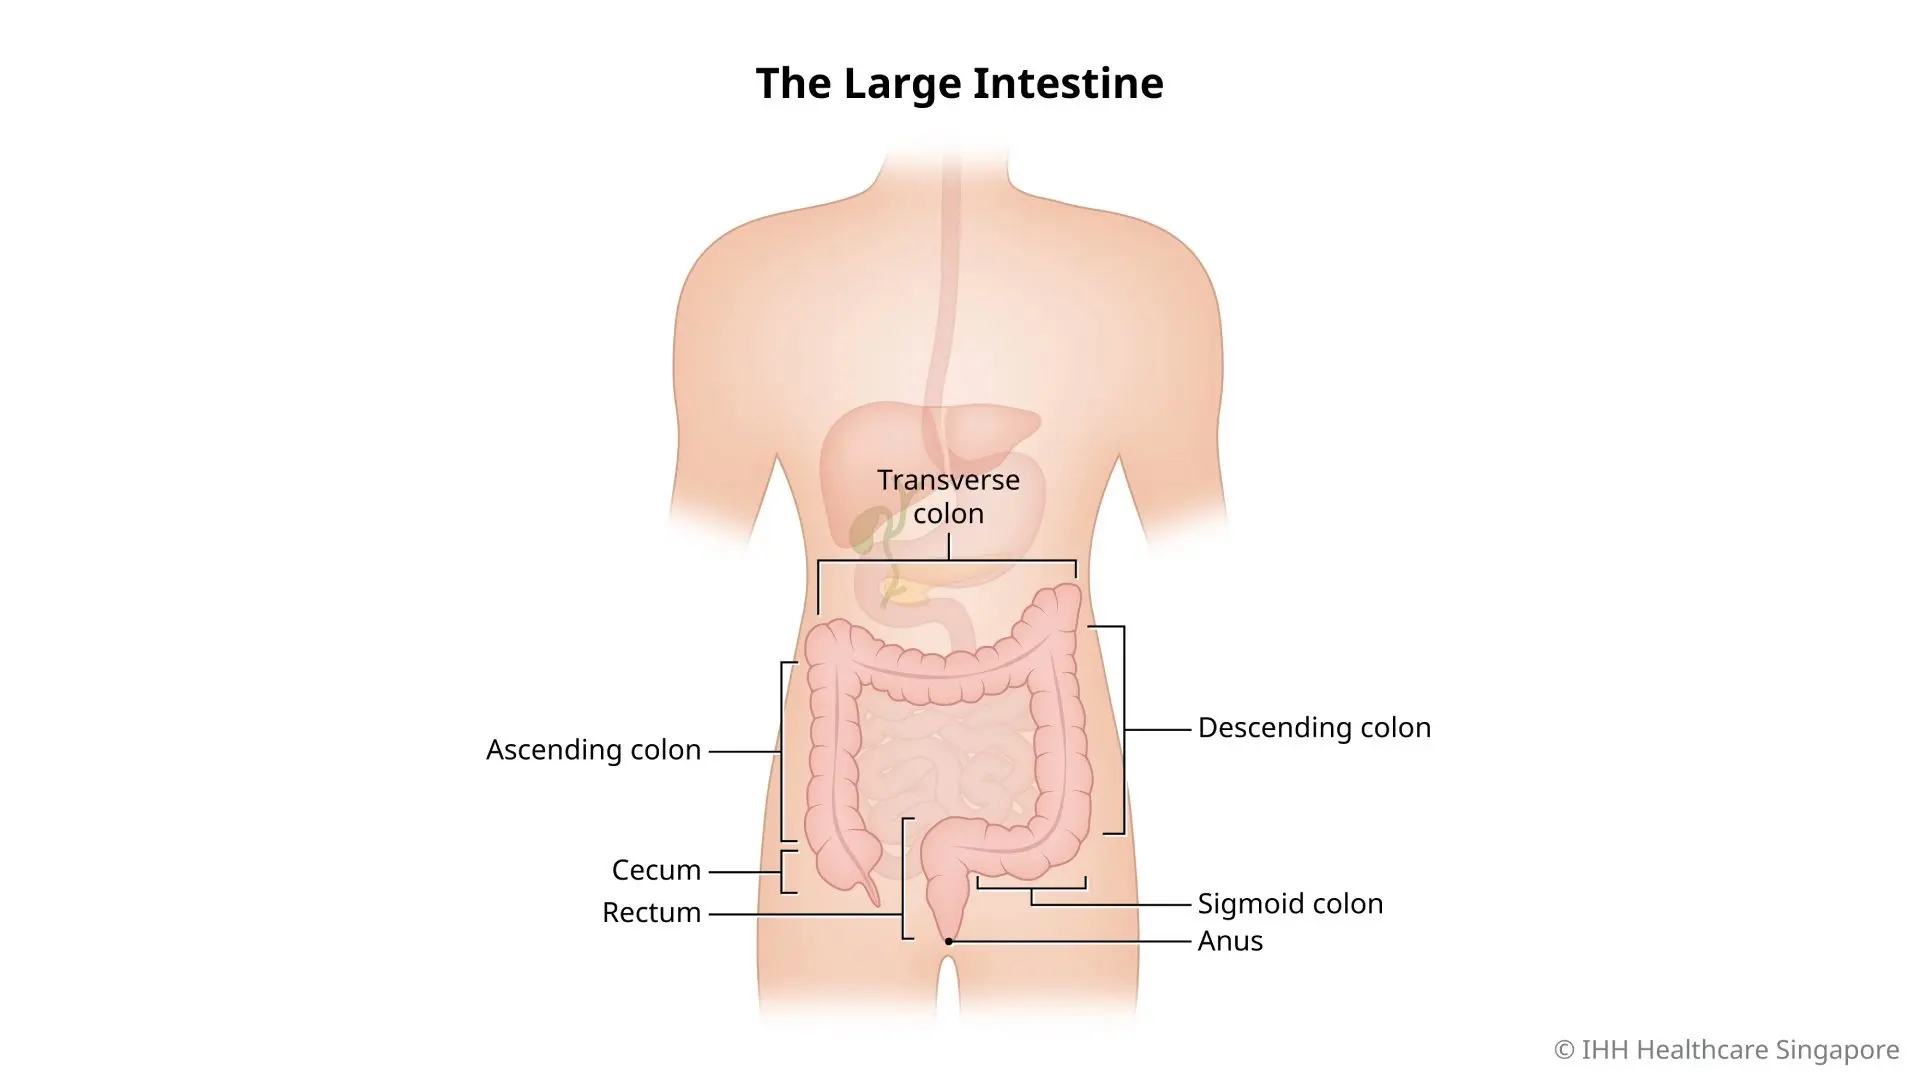 Illustration of large intestine, cecum, ascending colon, transverse colon, descending colon, sigmoid colon, rectum, and anus.